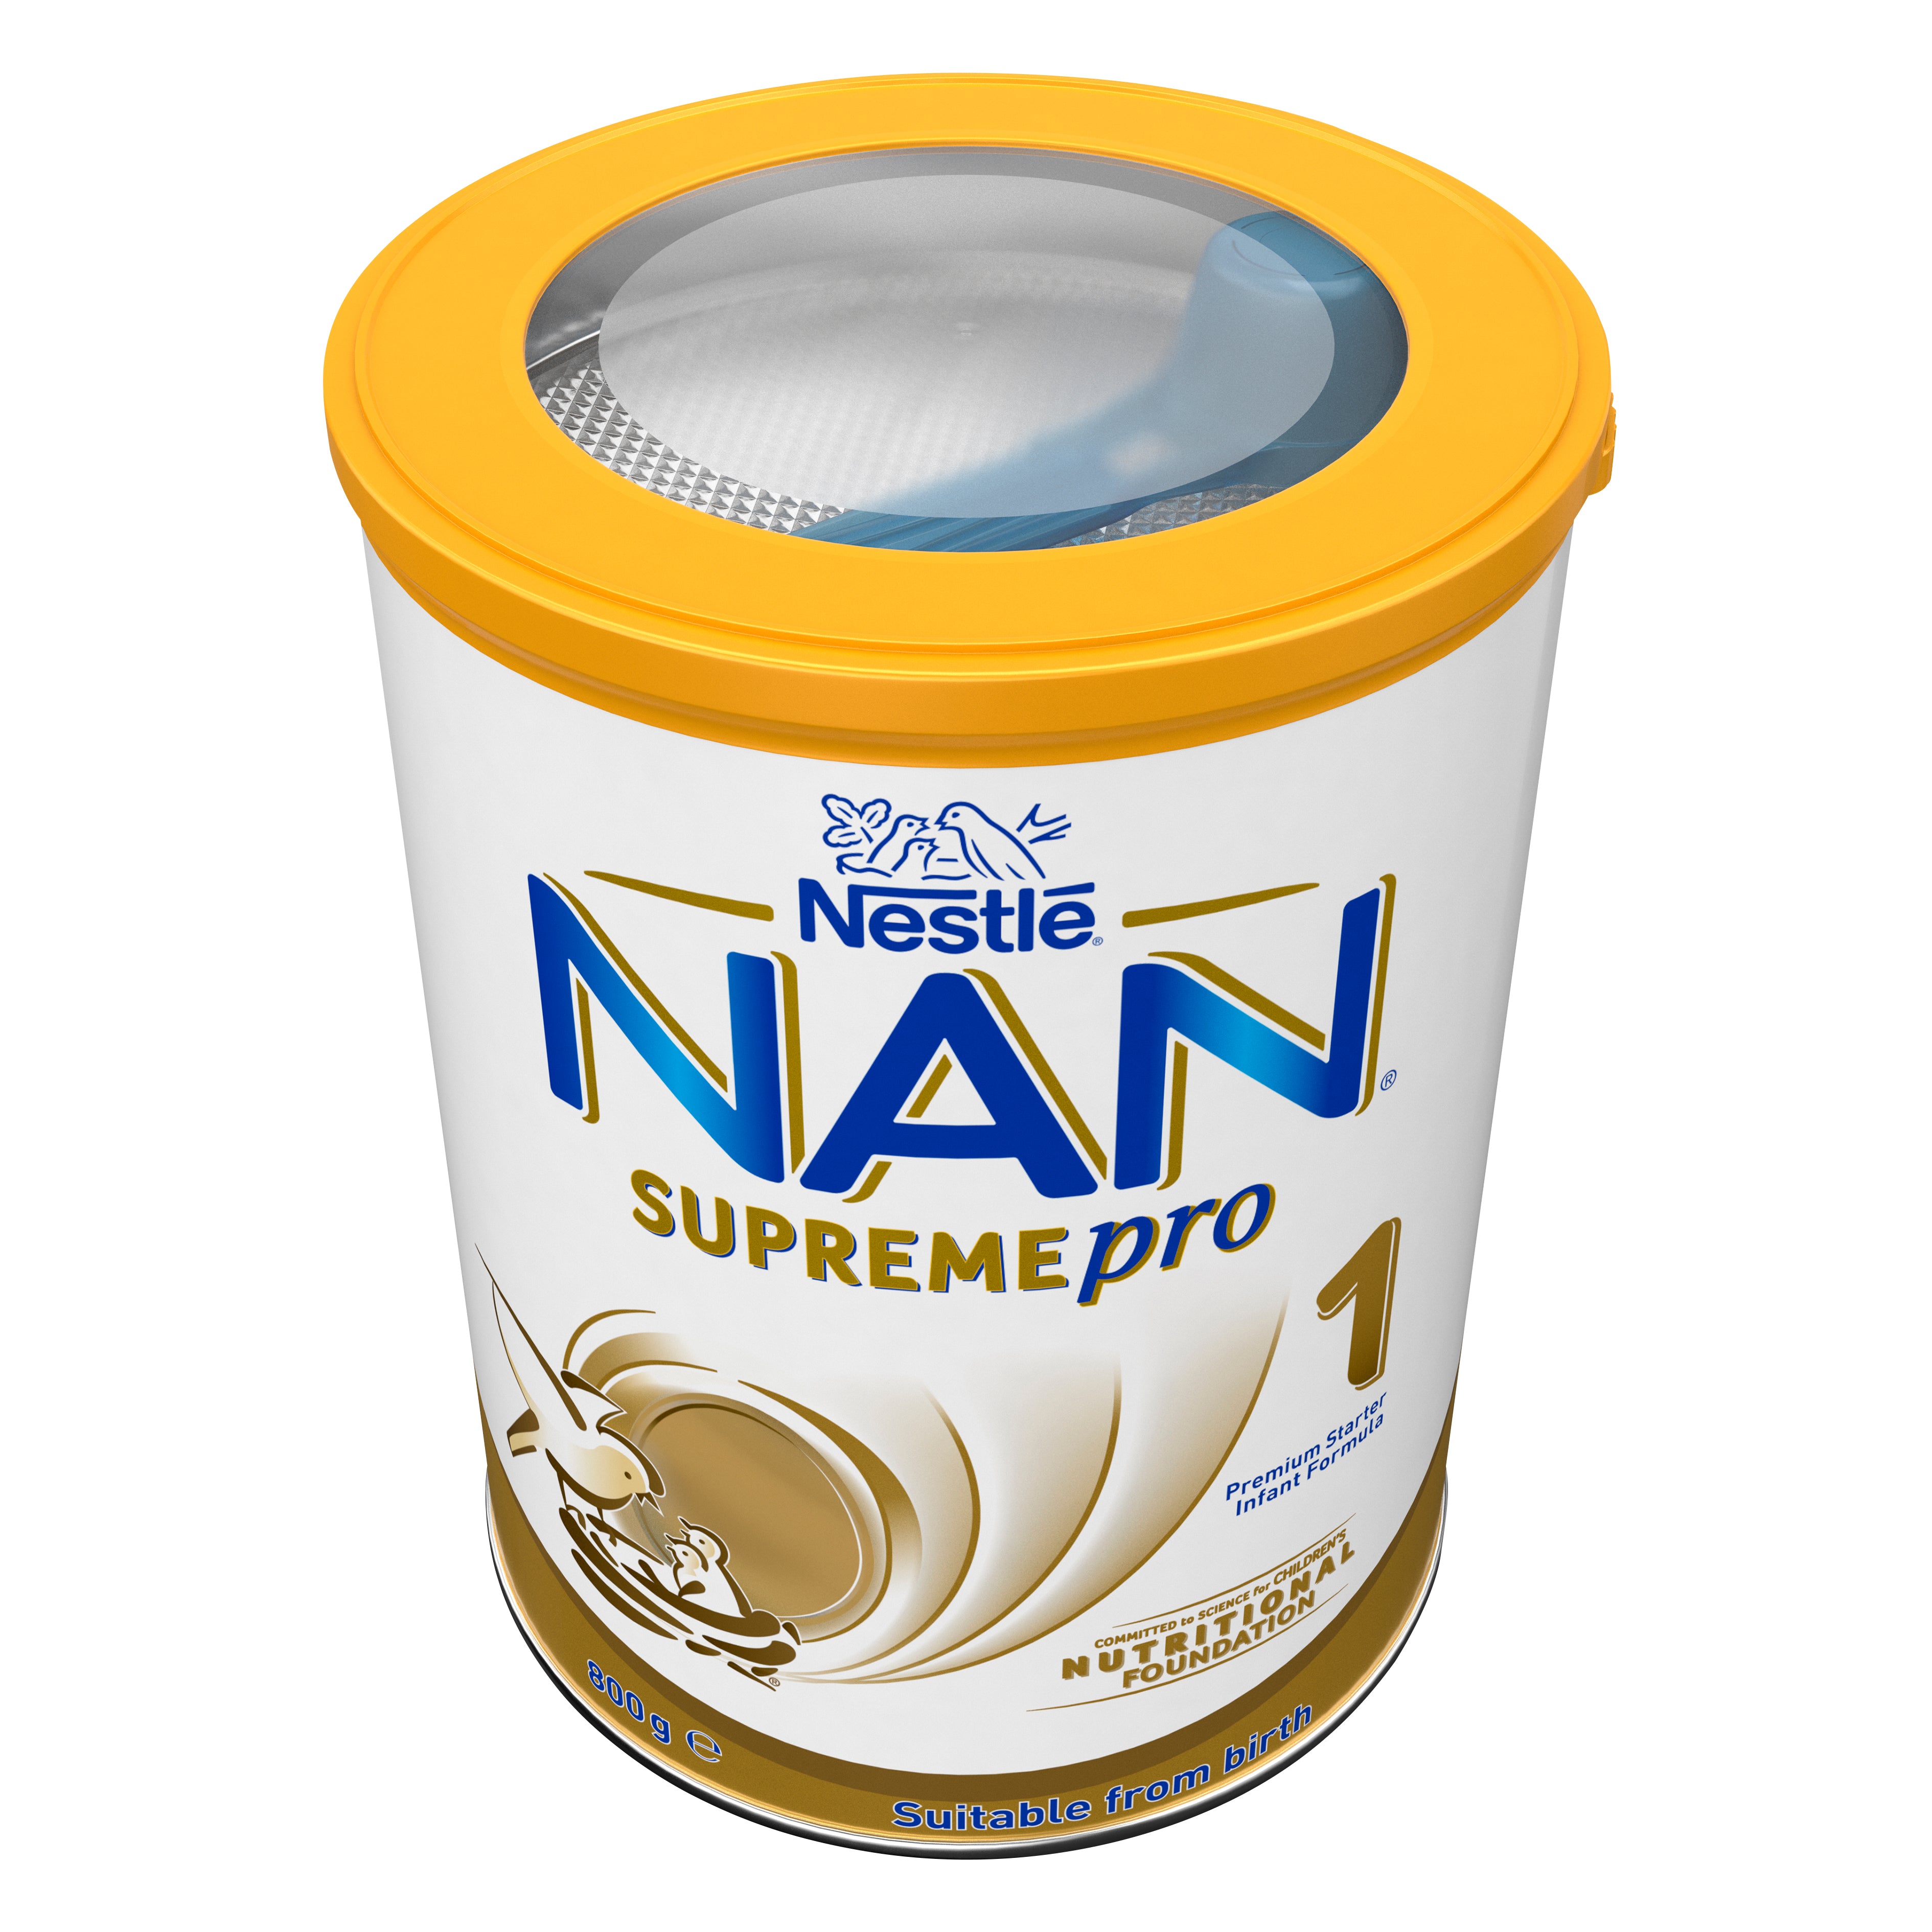 NAN supreme pro 1 0m +